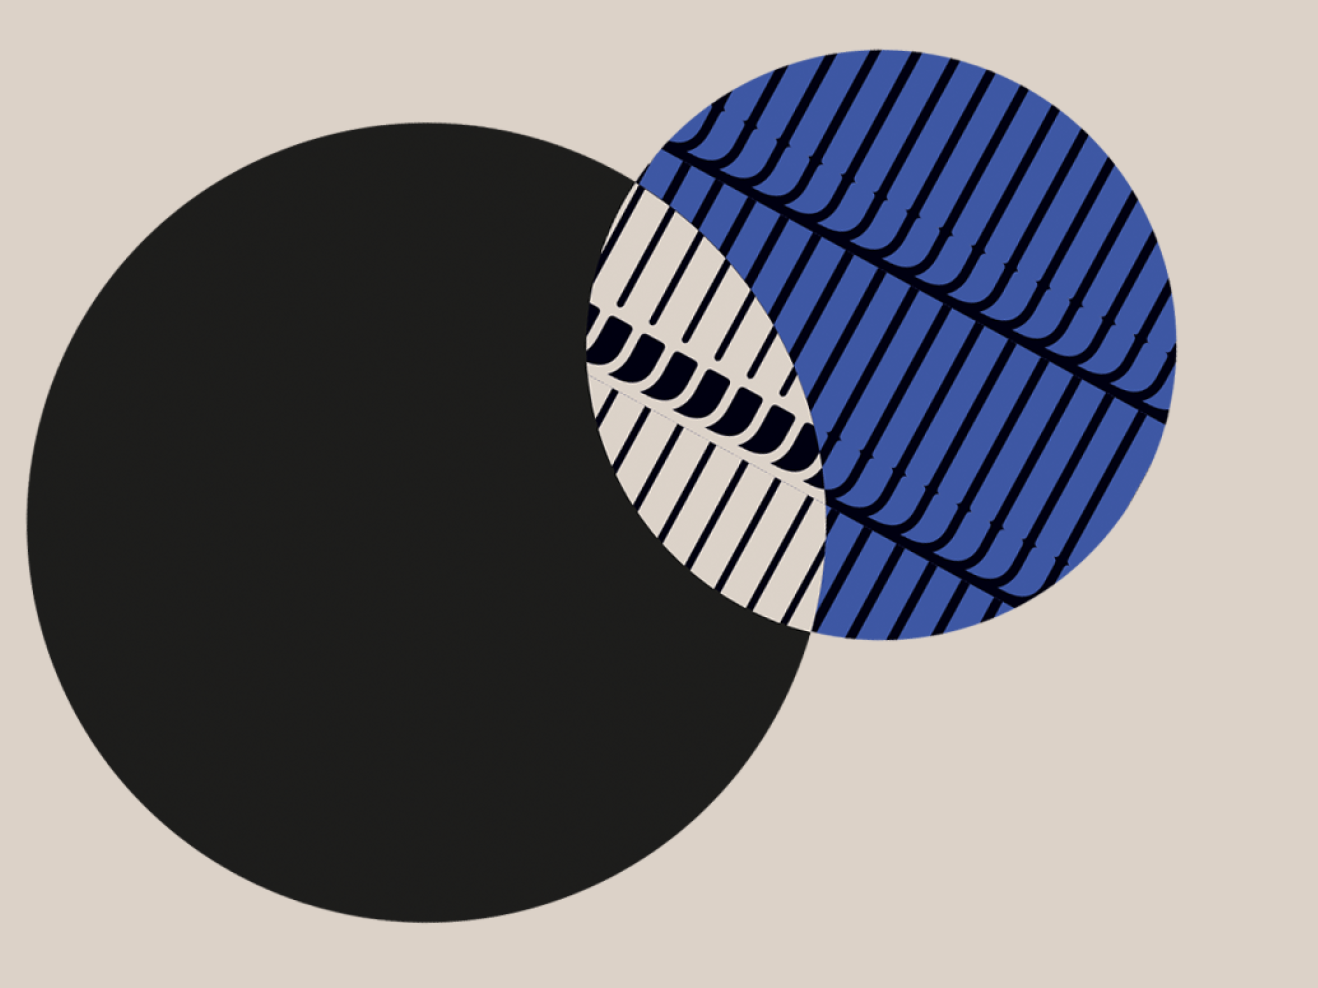 Illustration zweier ineinander greifender Kreise, einer schwarz, einer blau mit schwarzem Linienmuster.